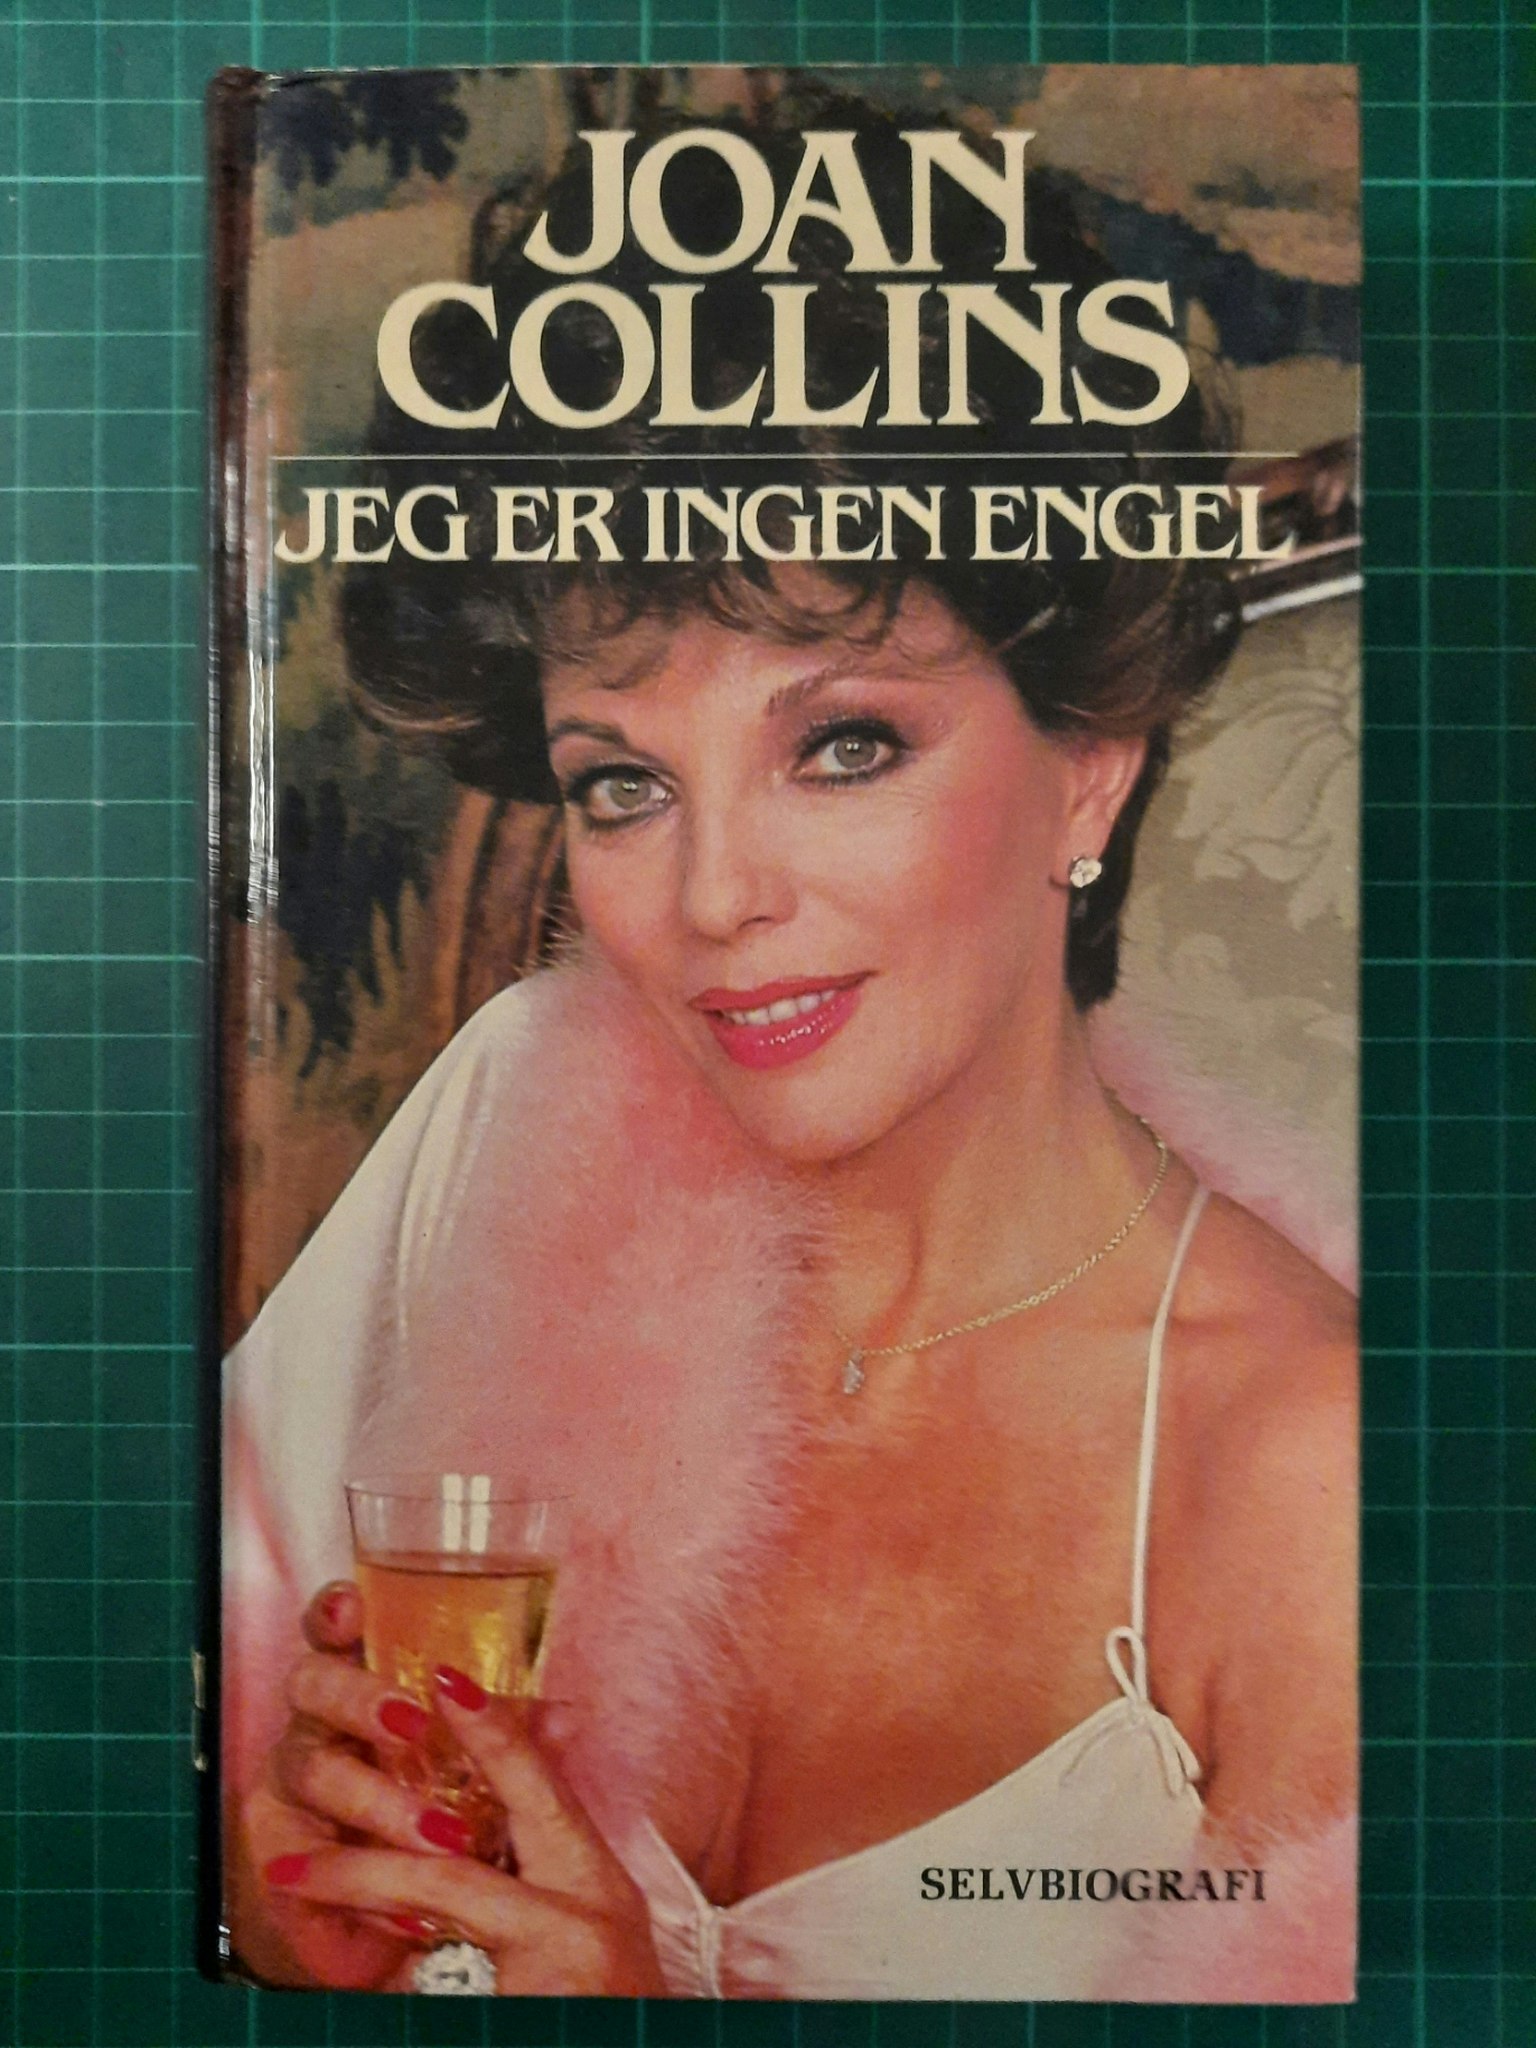 Joan Collins - Jeg er ingen engel